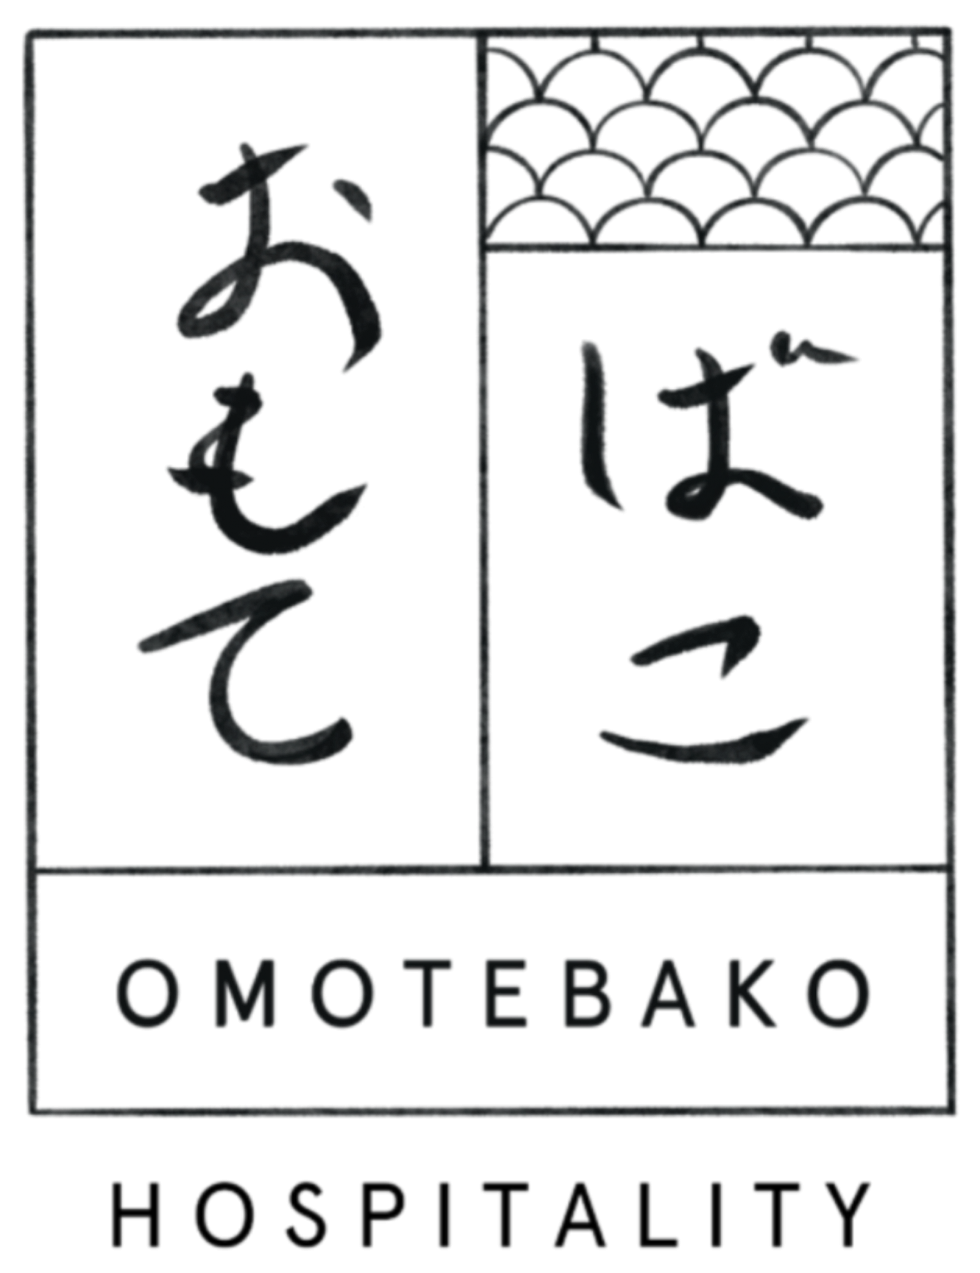 Omotebako